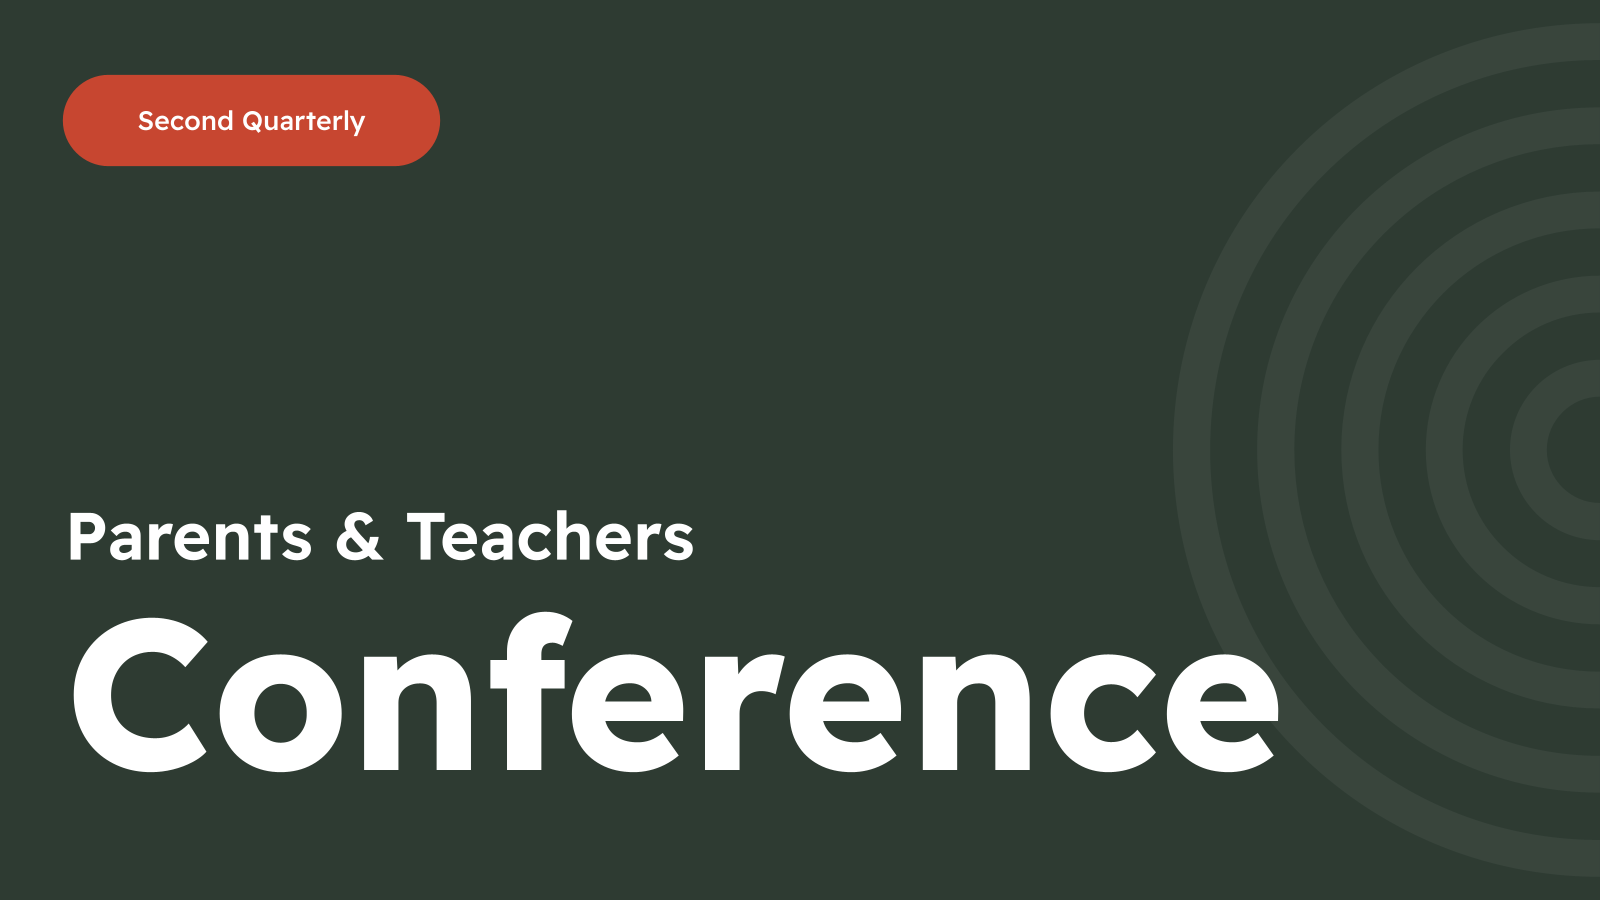 Parents & Teachers Conference Academic Presentation Template